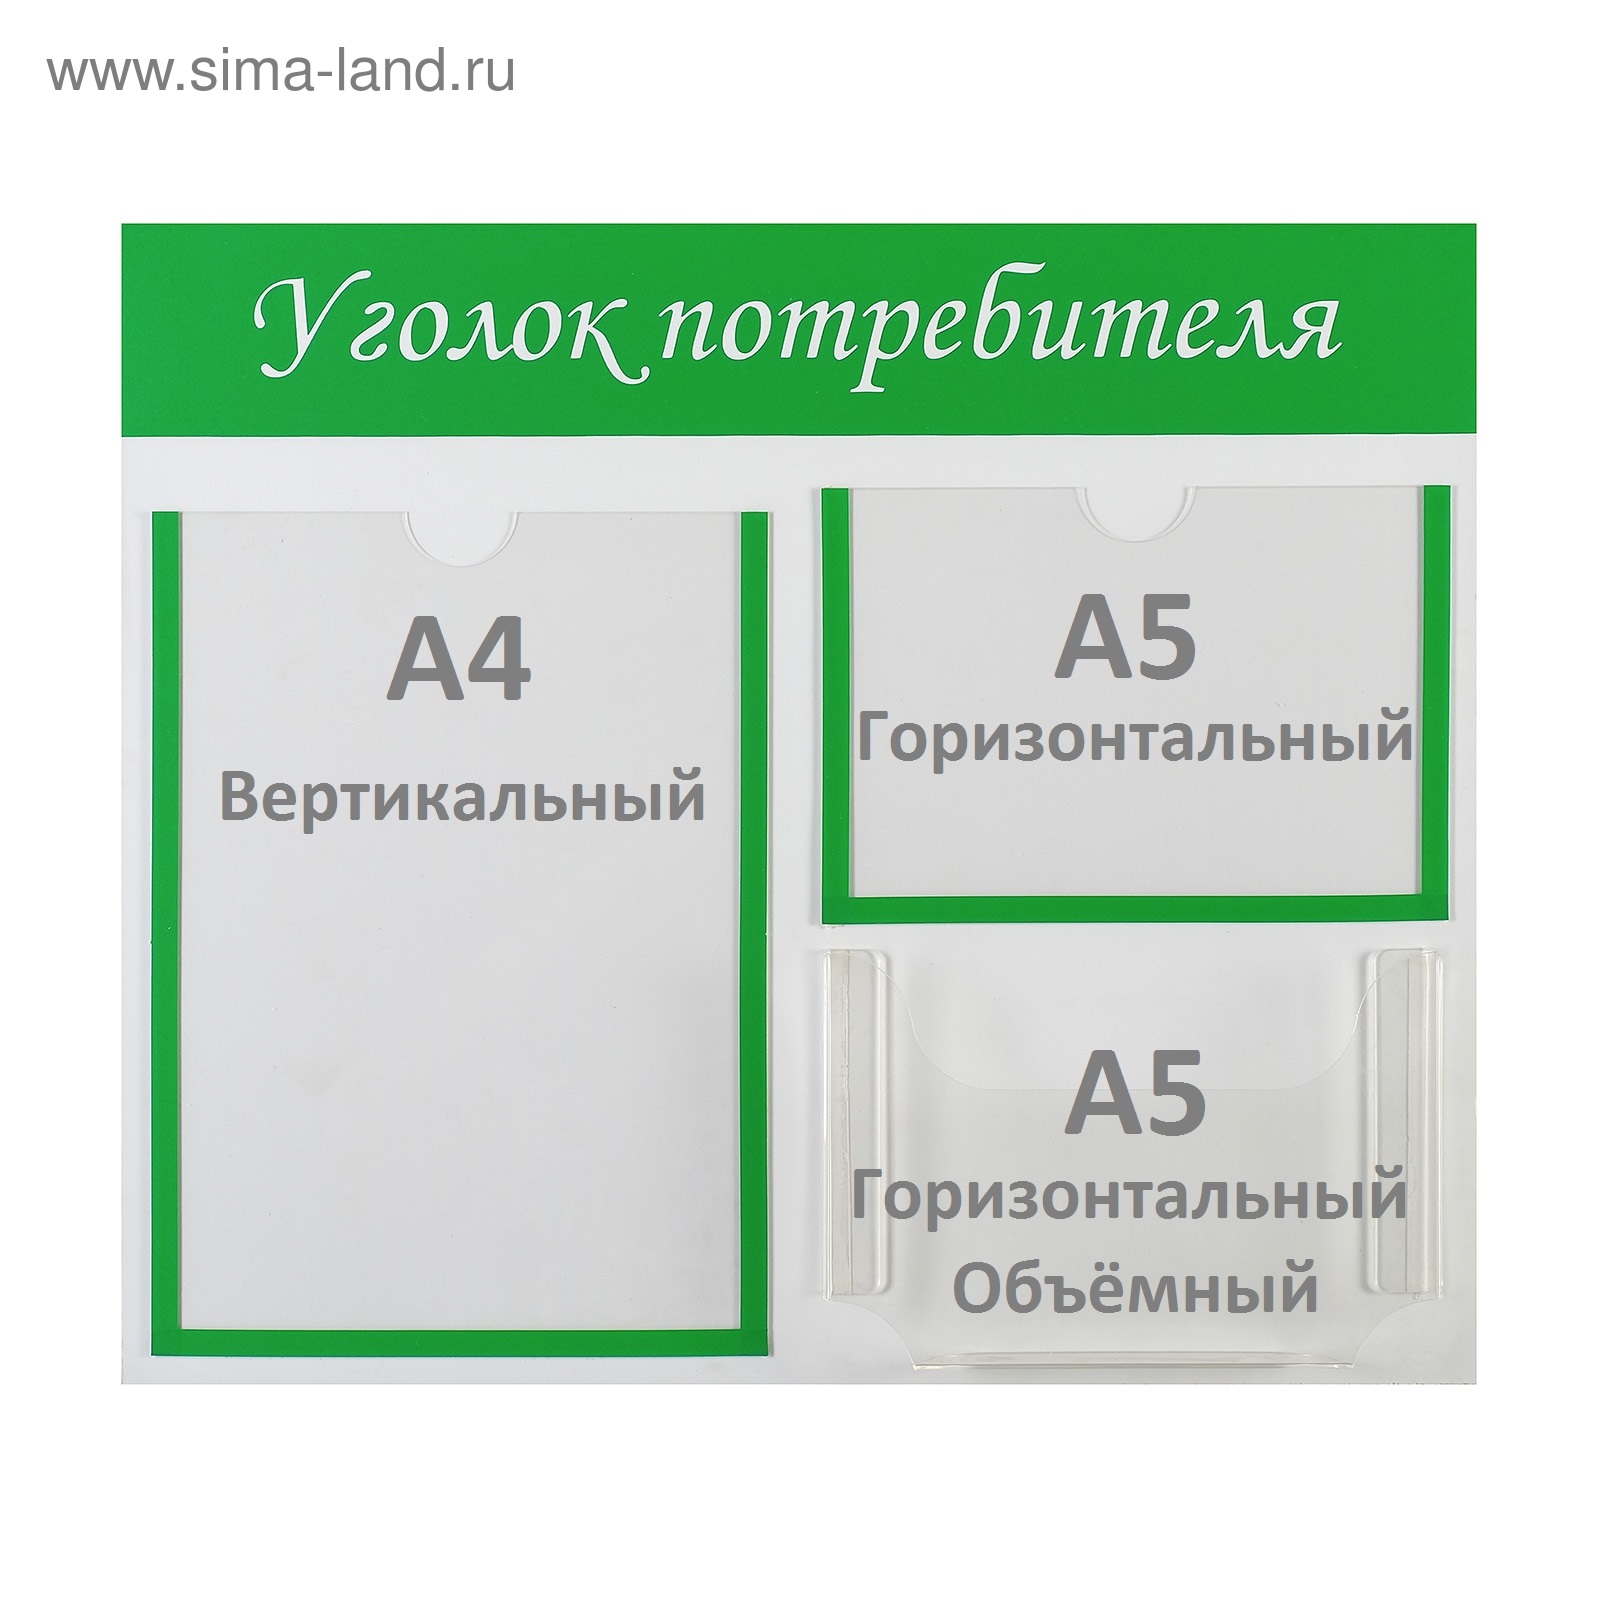 Информационный стенд "Уголок потребителя" 3 кармана (1 плоский А4, 1 плоский А5, 1 объёмный А5)